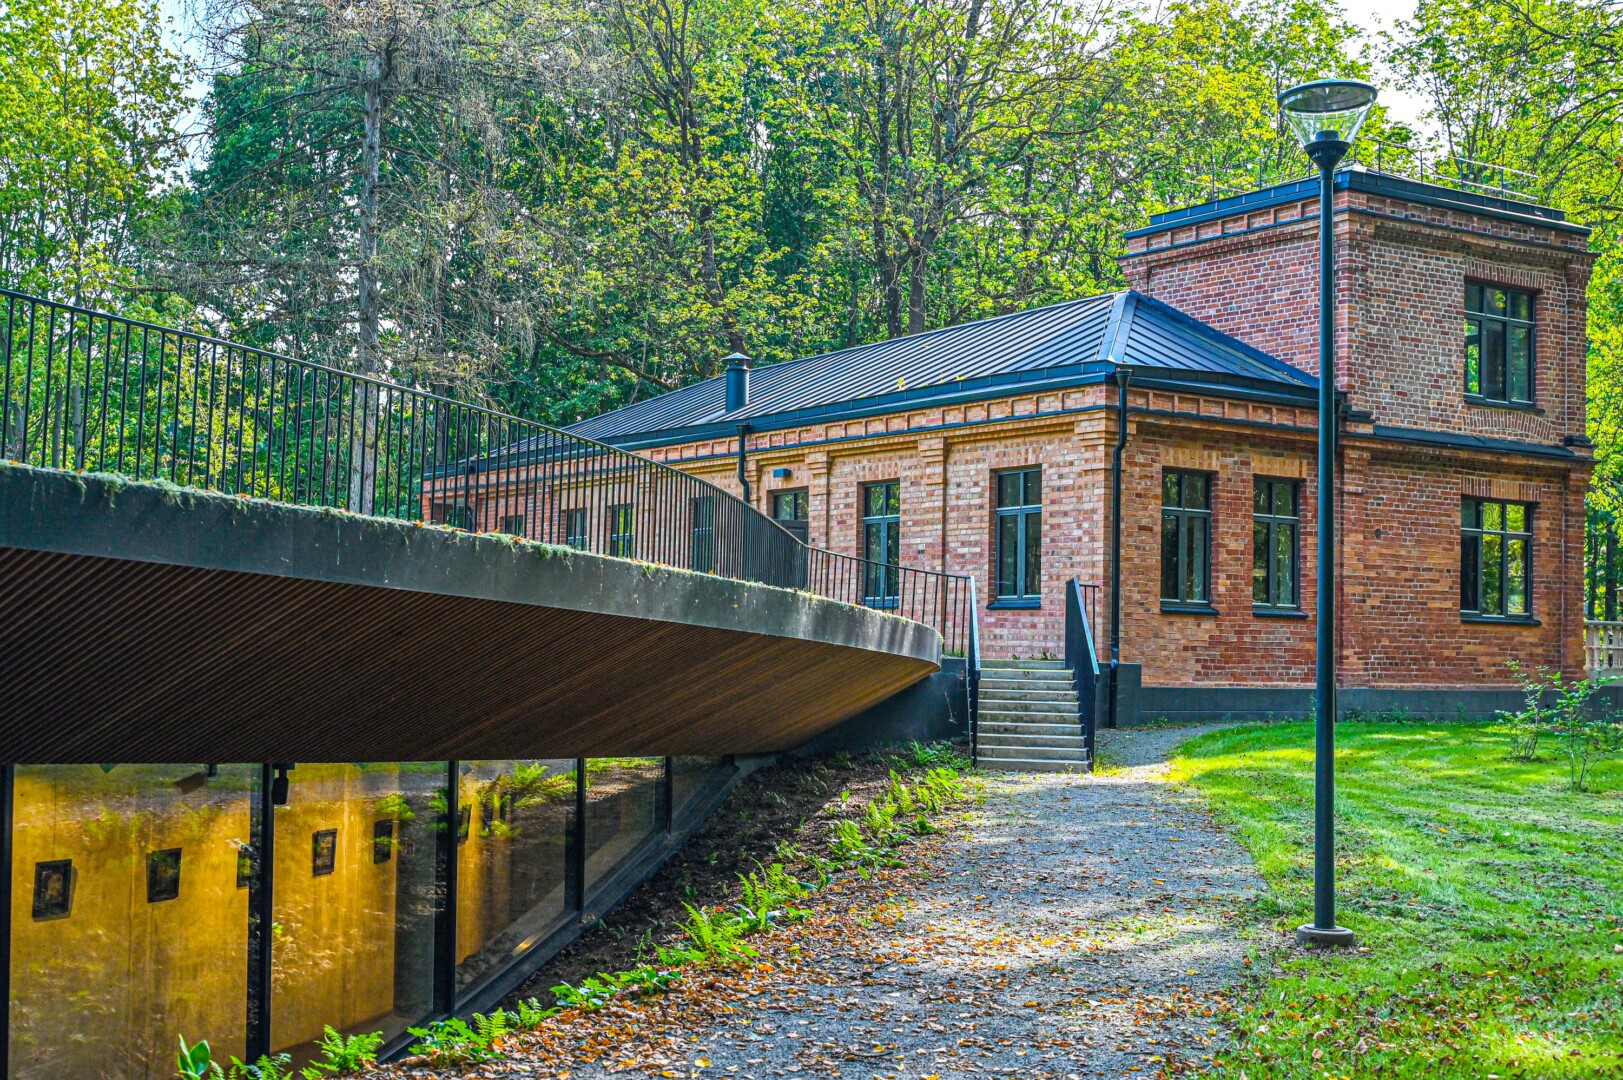 Skaistakalnio parke, istorinėje poeto Juozo Čerkeso-Besparnio sodyboje įsikūręs kūrybiškumo centras „Pragiedruliai“ – trokštama darbo vieta.